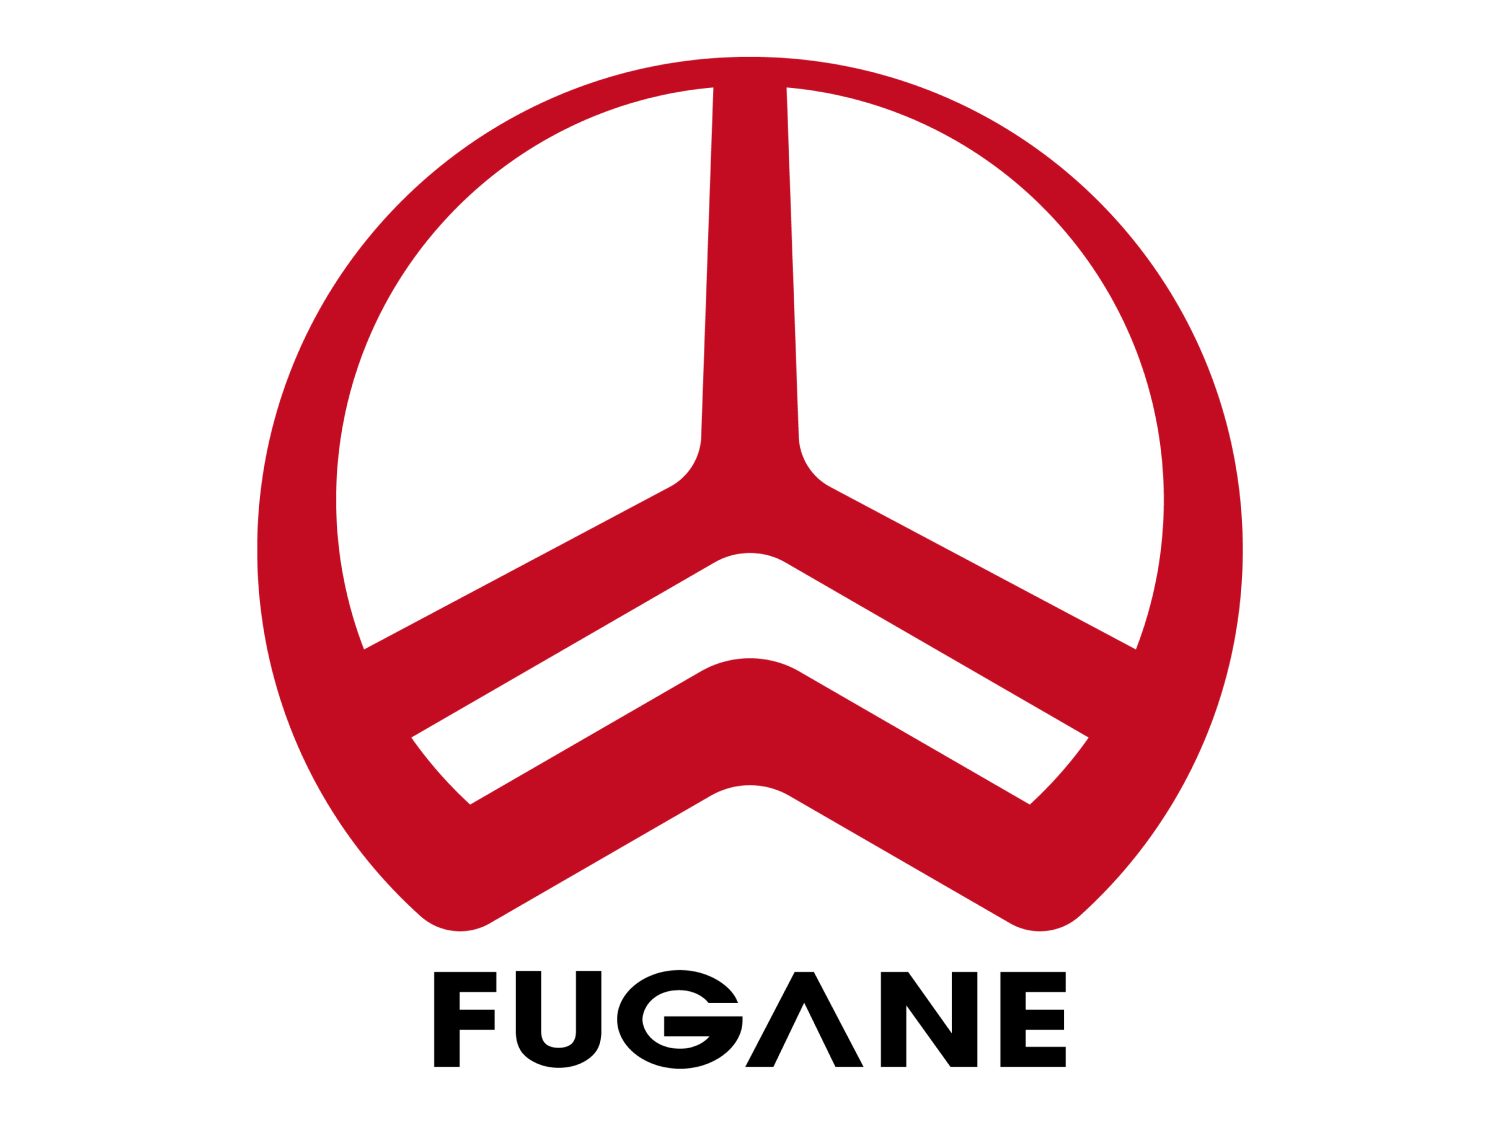 FUGANE